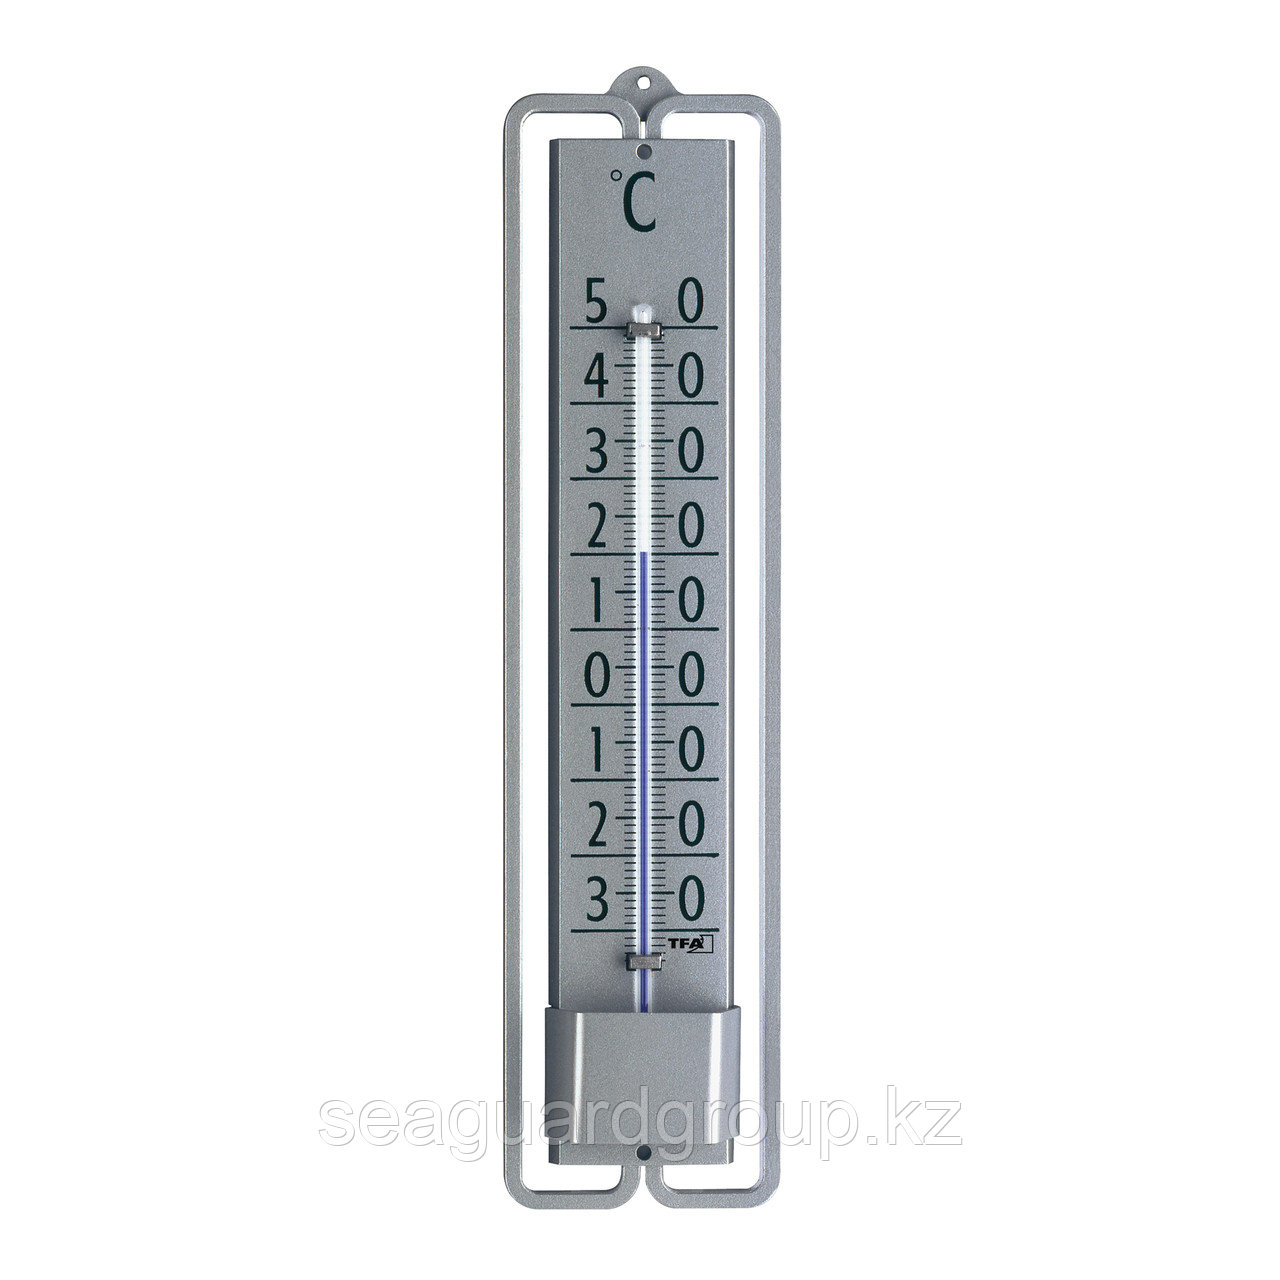 Металлический аналоговый термометр